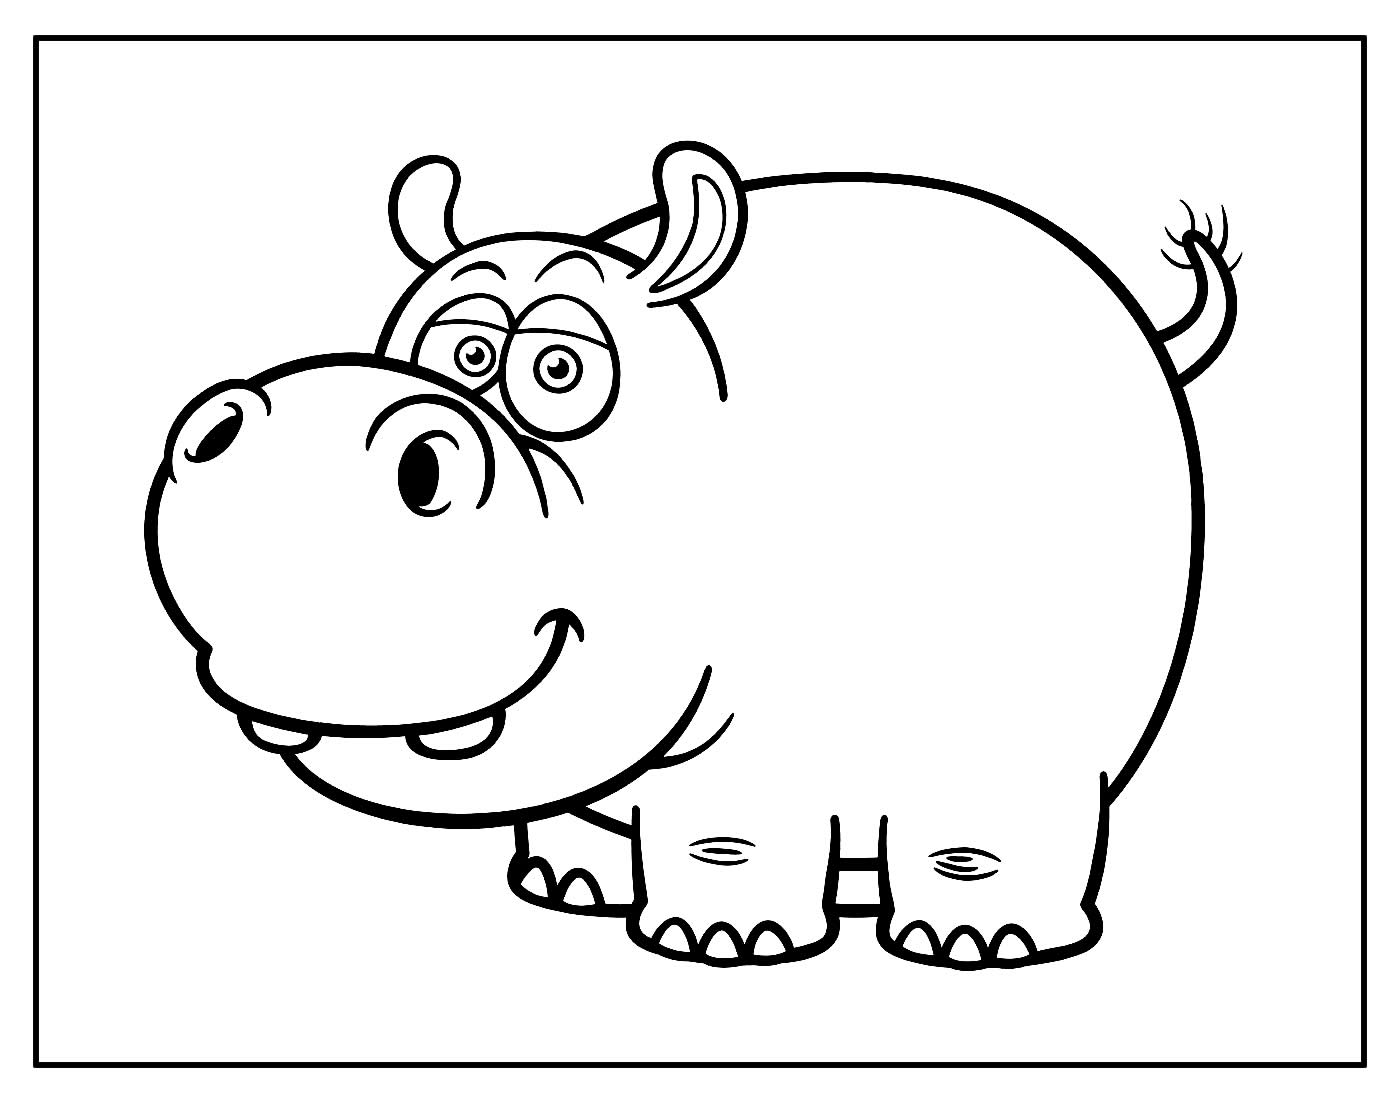 Desenho para colorir de Hipopótamo